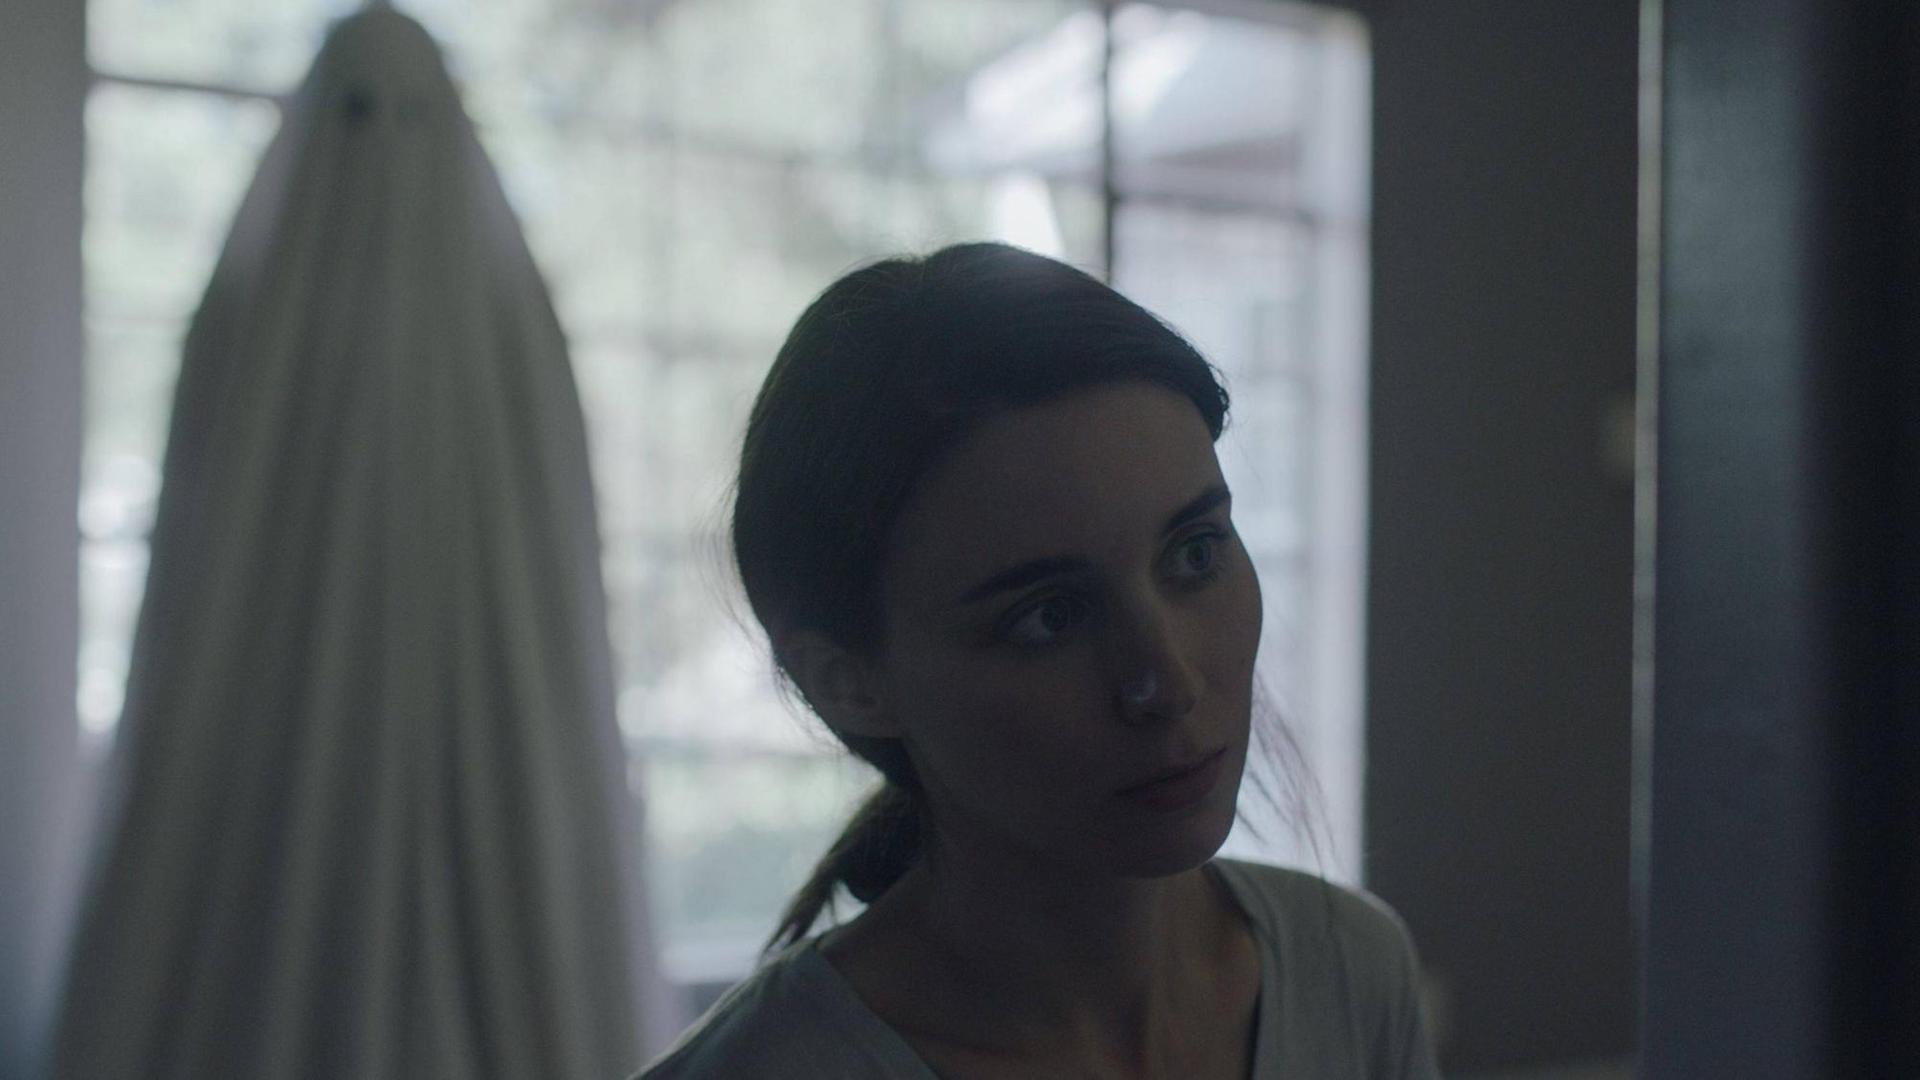 Szenenbild aus "A Ghost Story" - M (Rooney Mara) blickt traurig, hinter ihr der Geist von C (Casey Affleck) mit dem Bettlacken